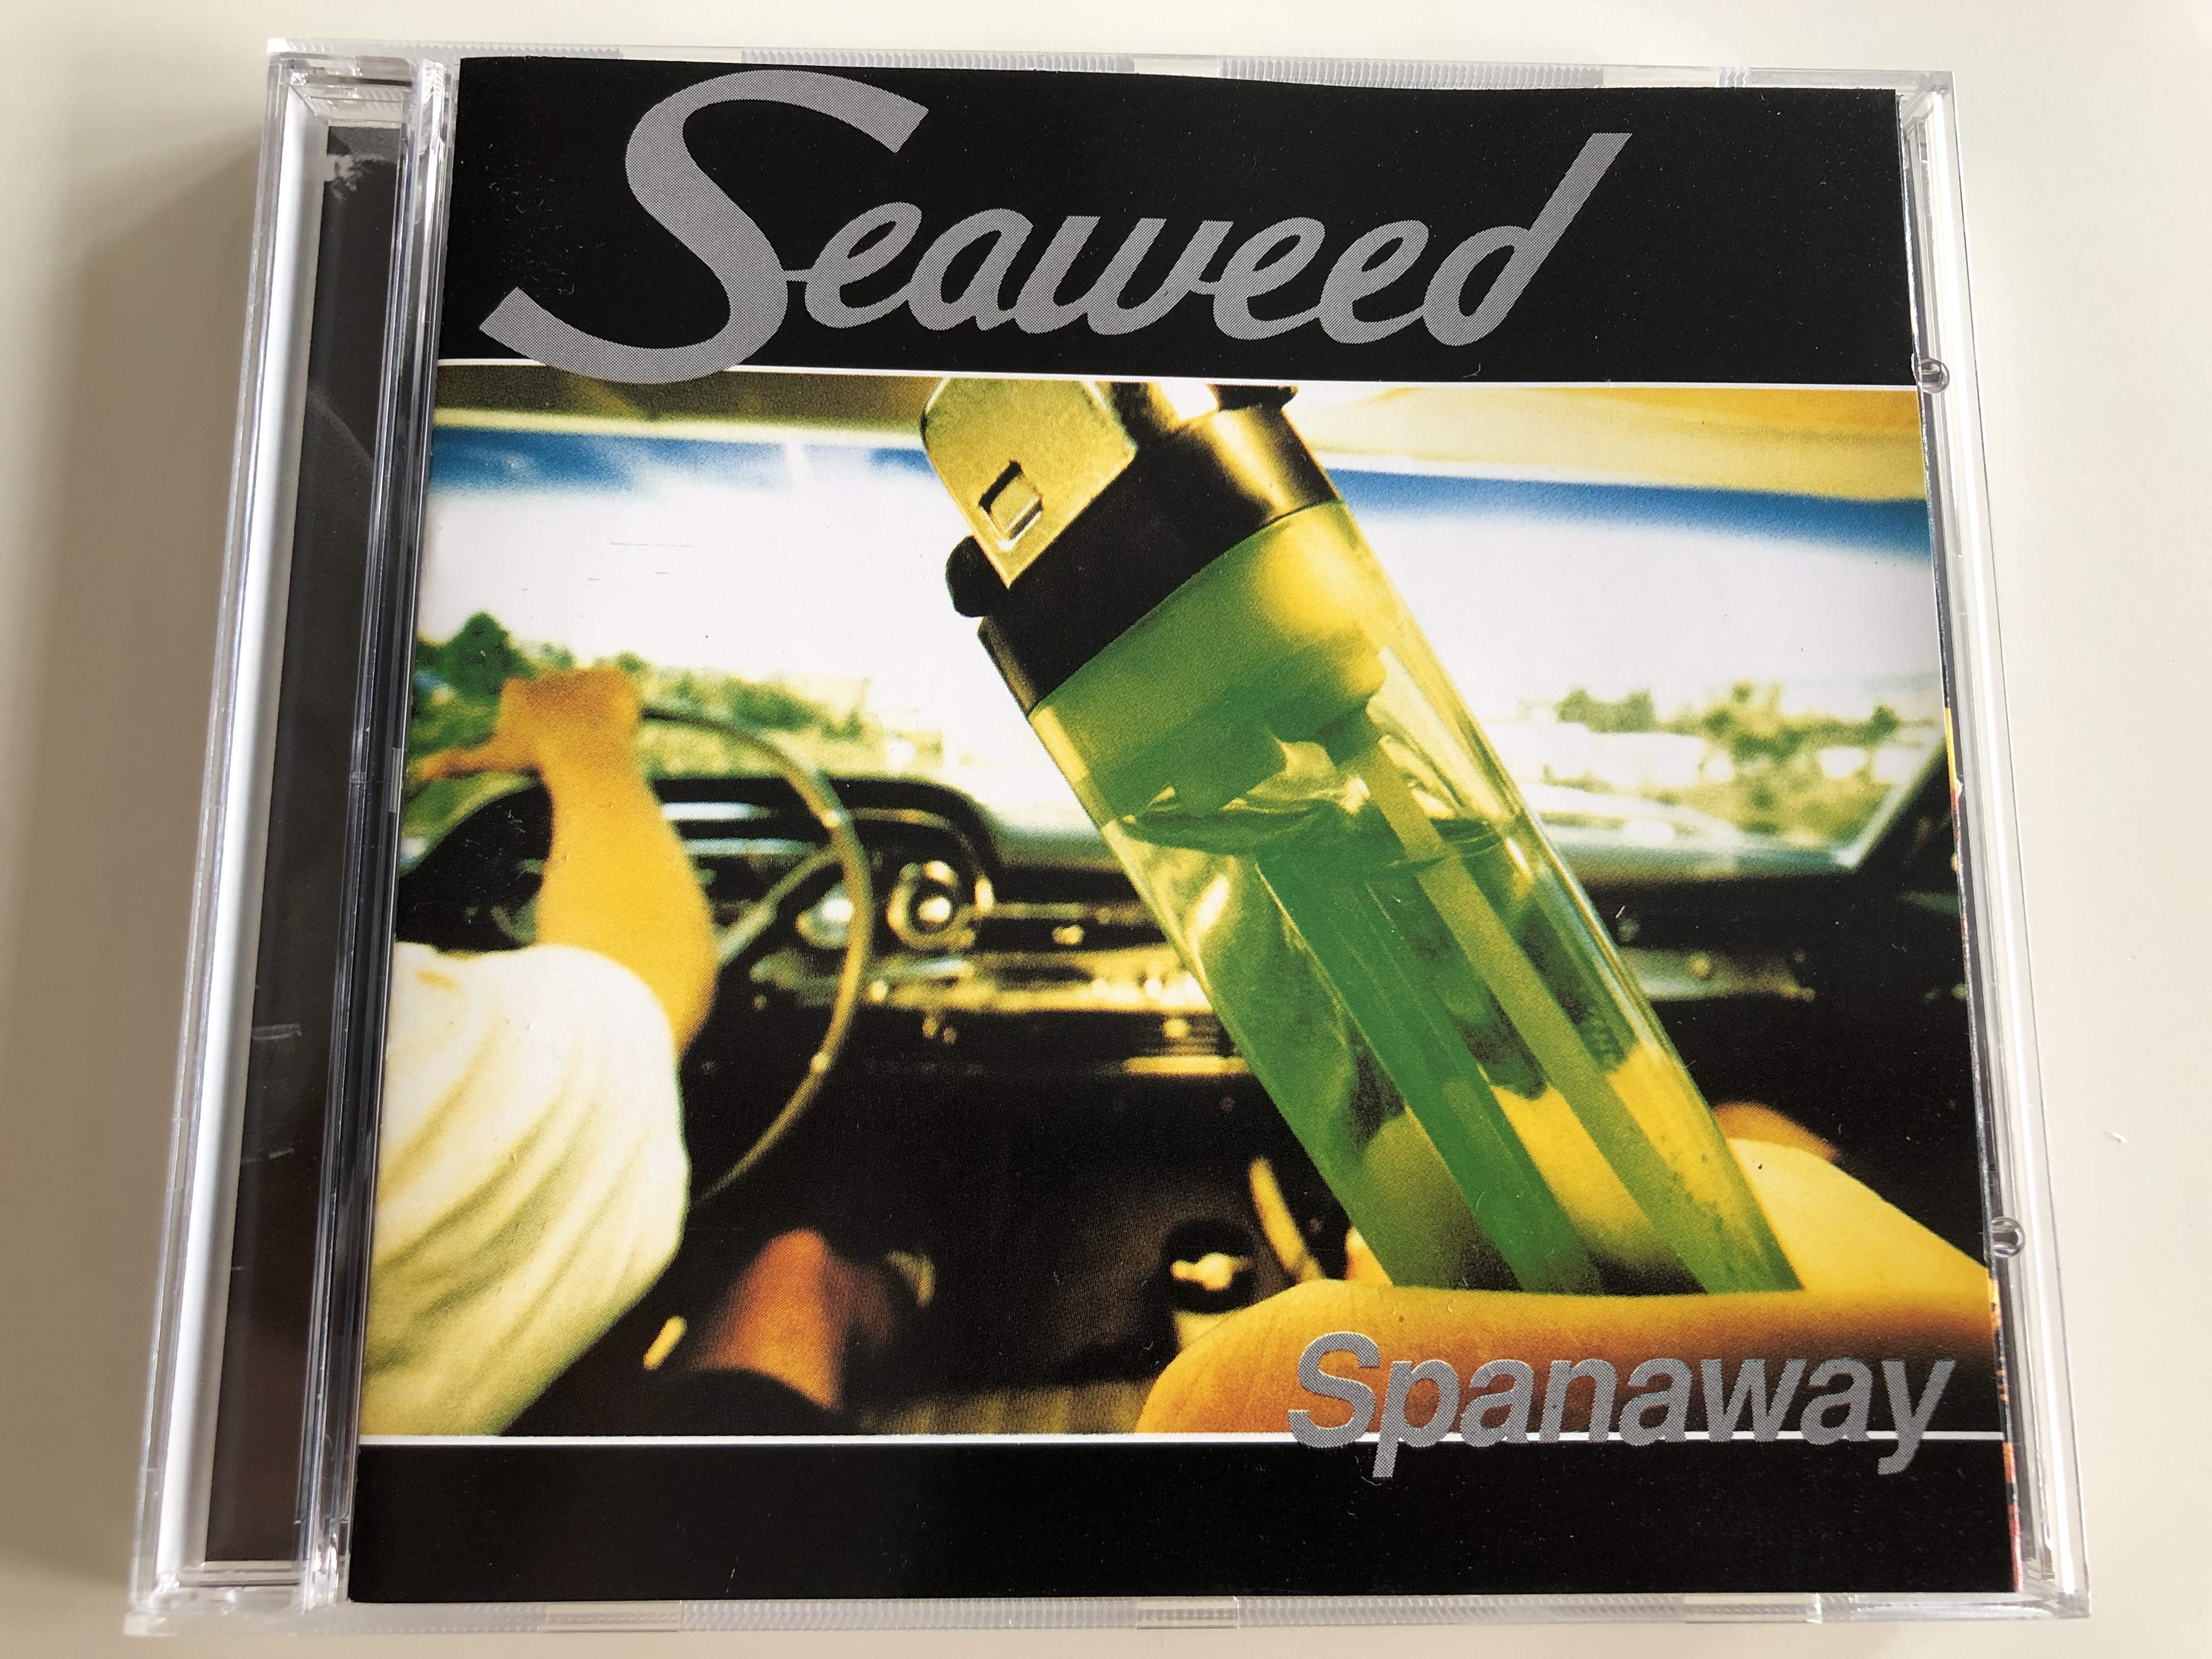 seaweed-spanaway-start-with-common-mistake-defender-peppy-s-bingo-audio-cd-1995-162009-2-1-.jpg